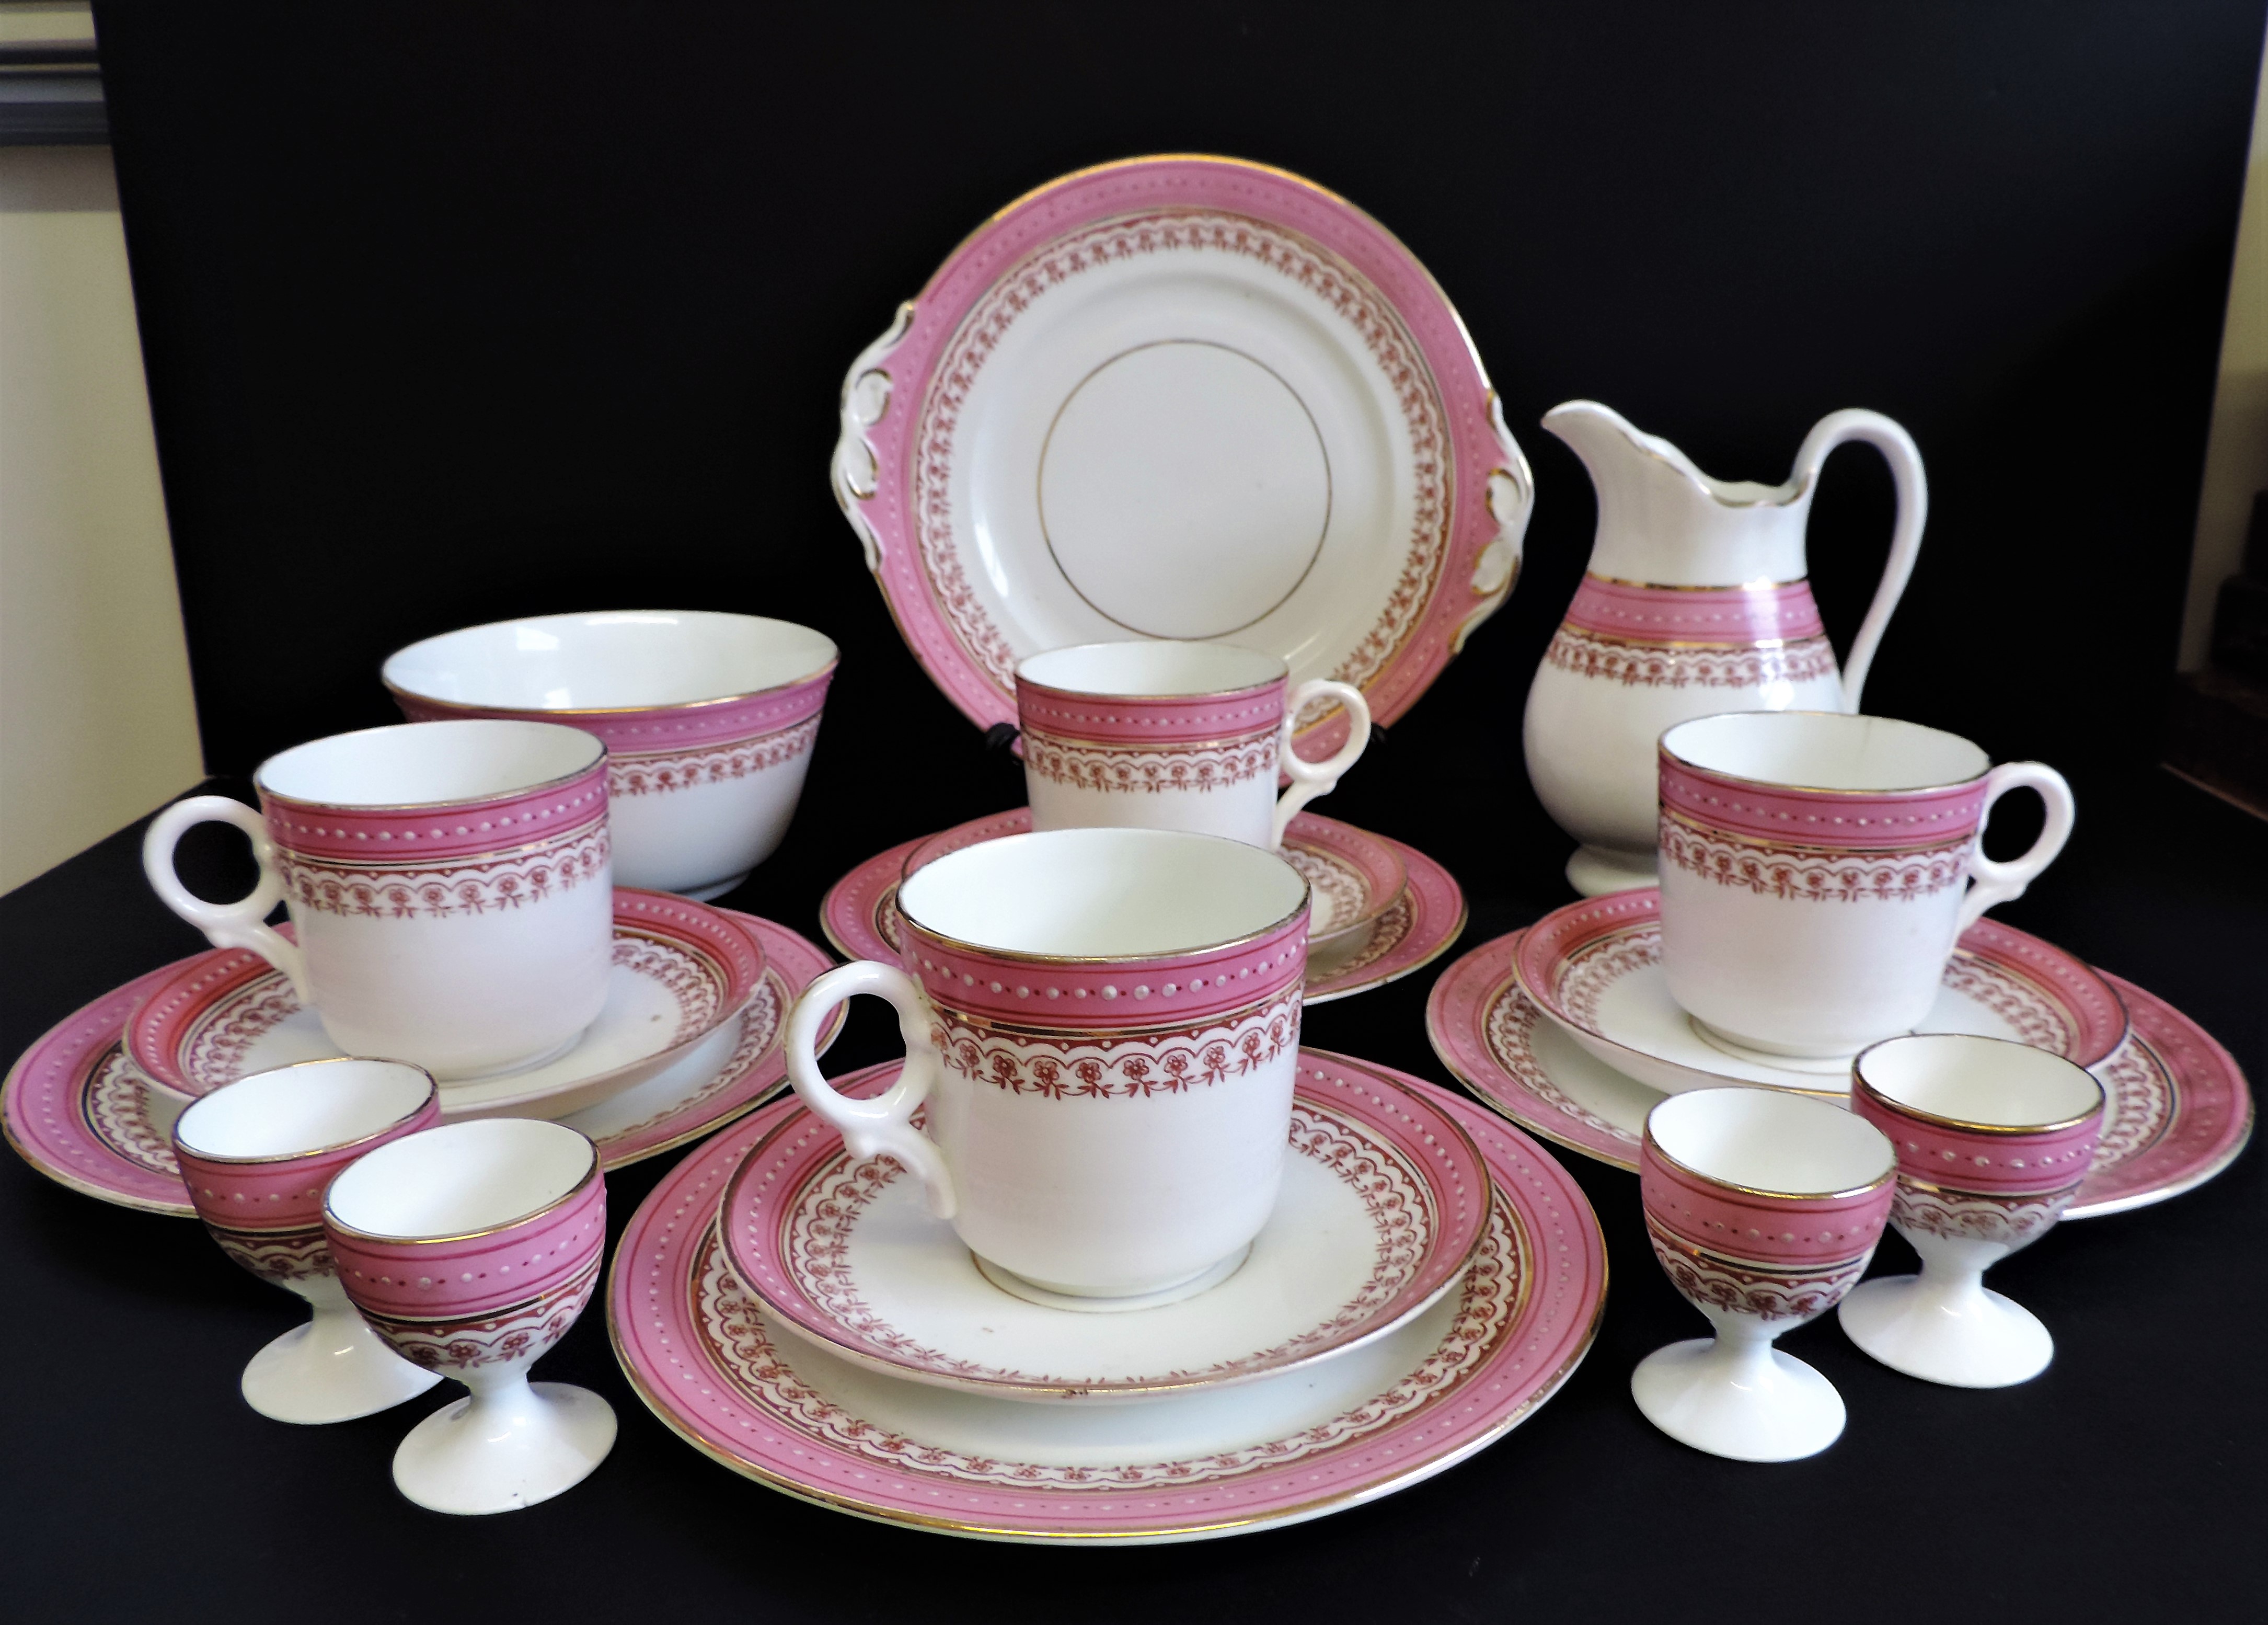 Vintage 19 piece Porcelain Breakfast/Tea Set for 4 People - Image 2 of 24